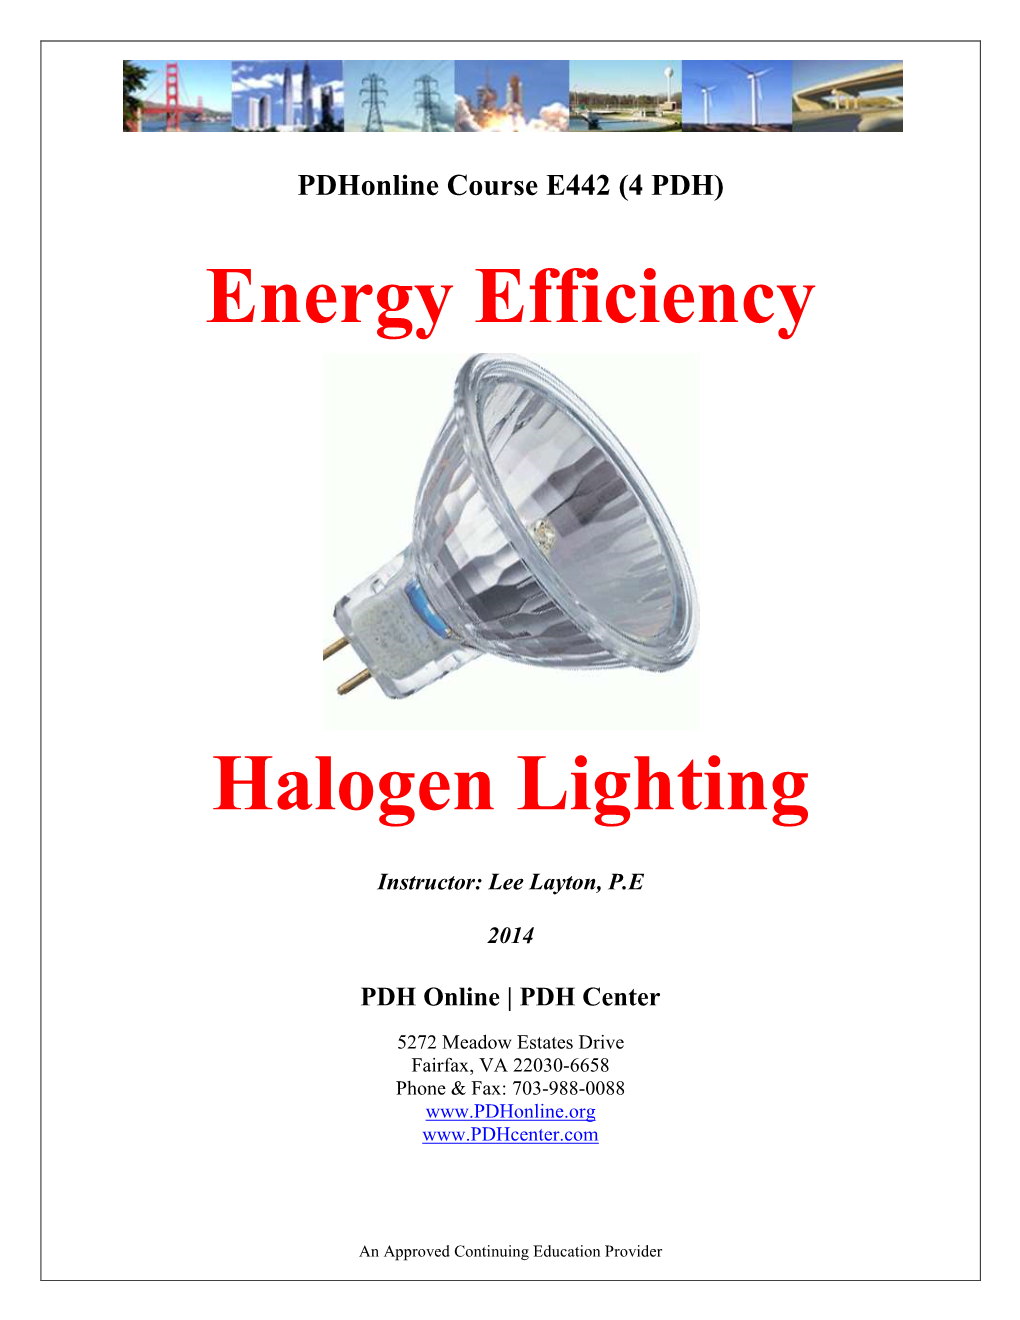 Energy Efficiency Halogen Lighting